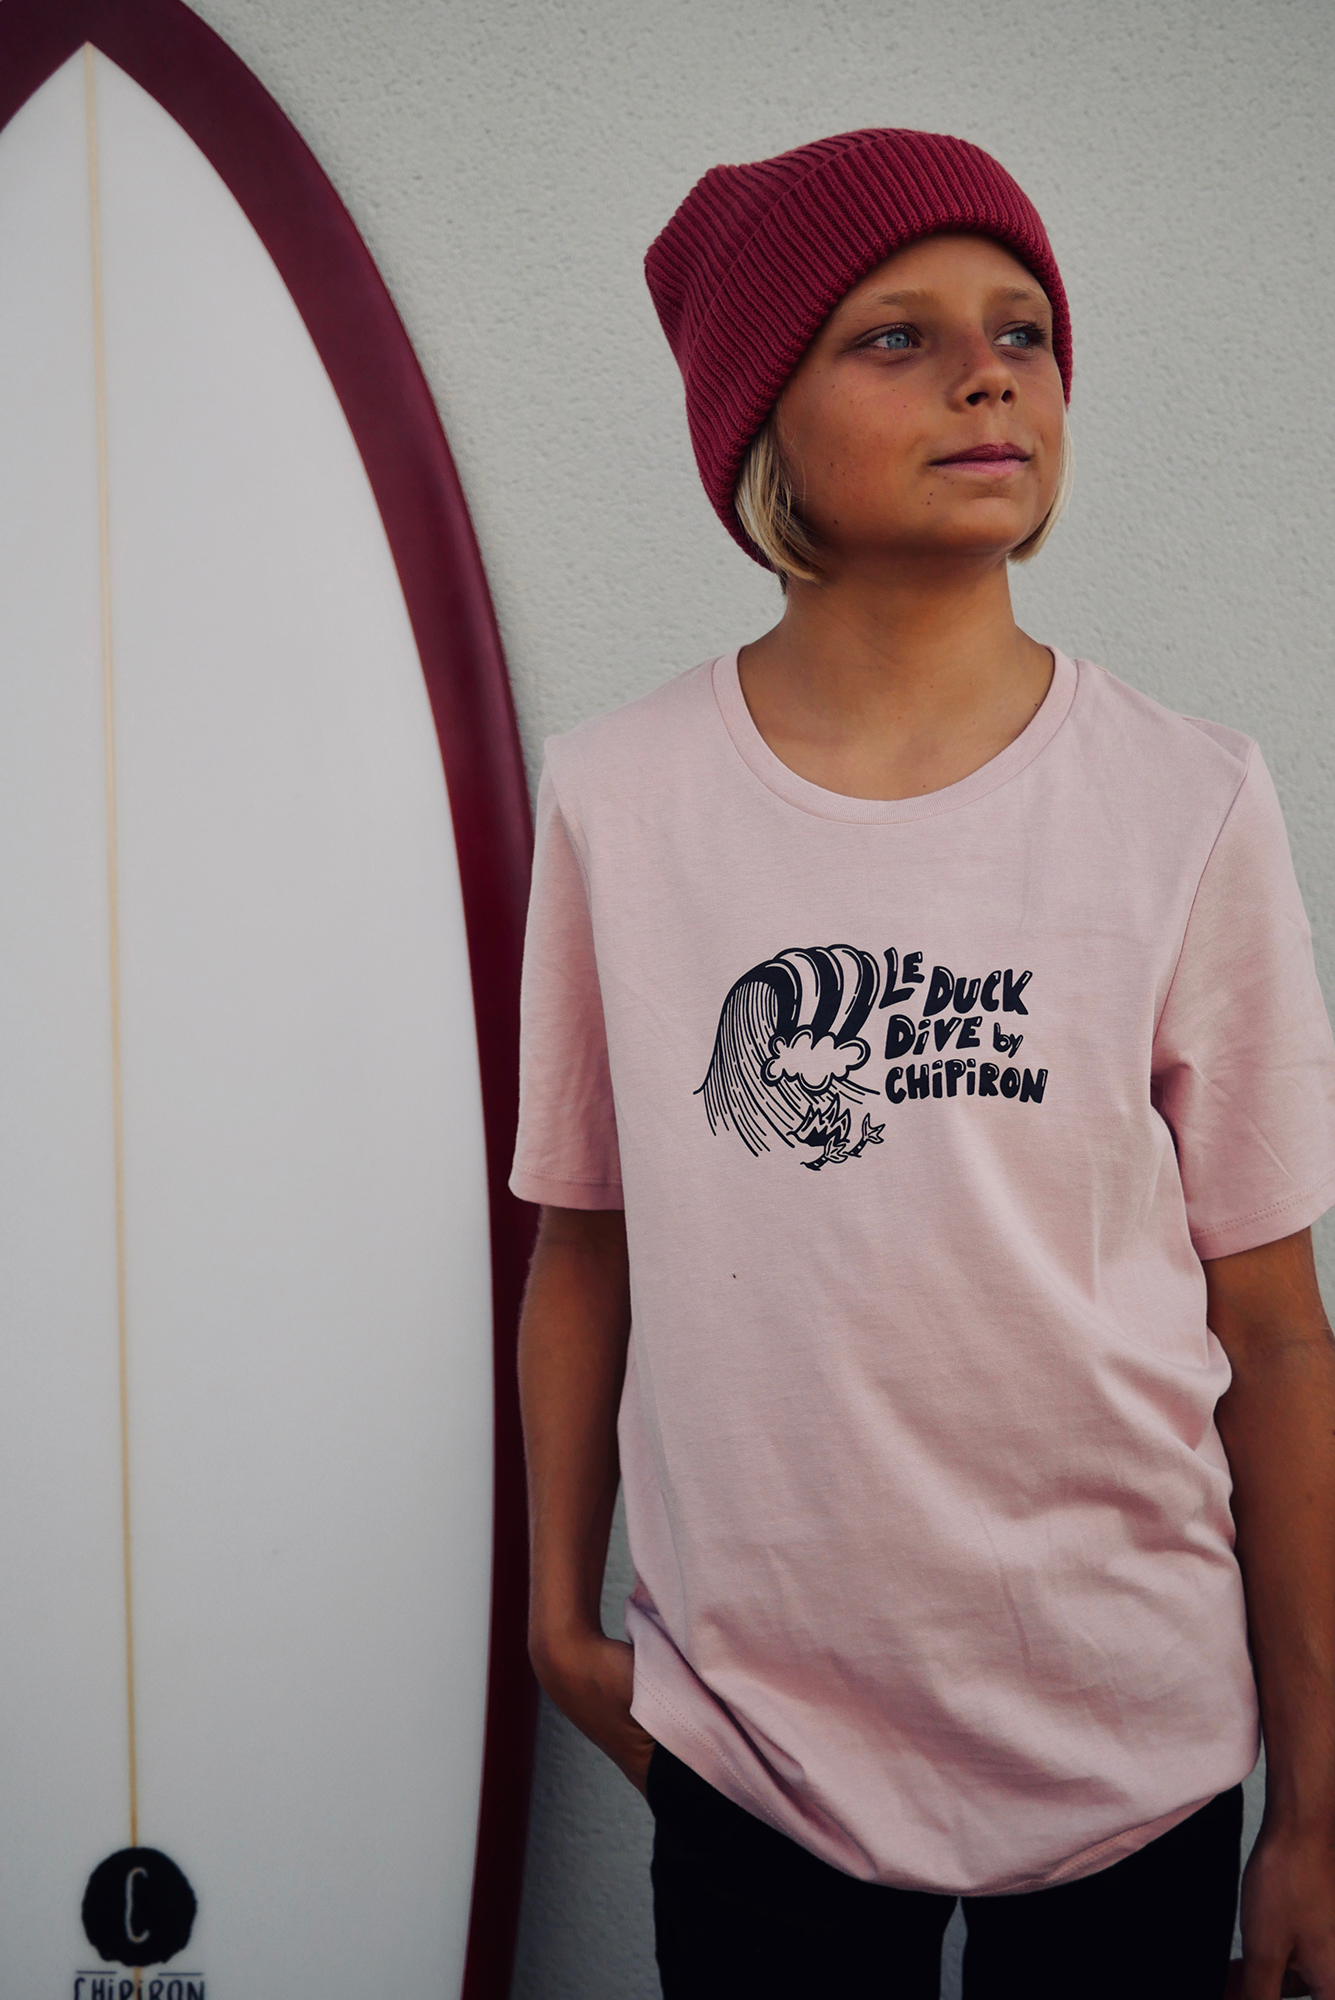 T-shirt Enfant Rose Duck Dive by Chipiron